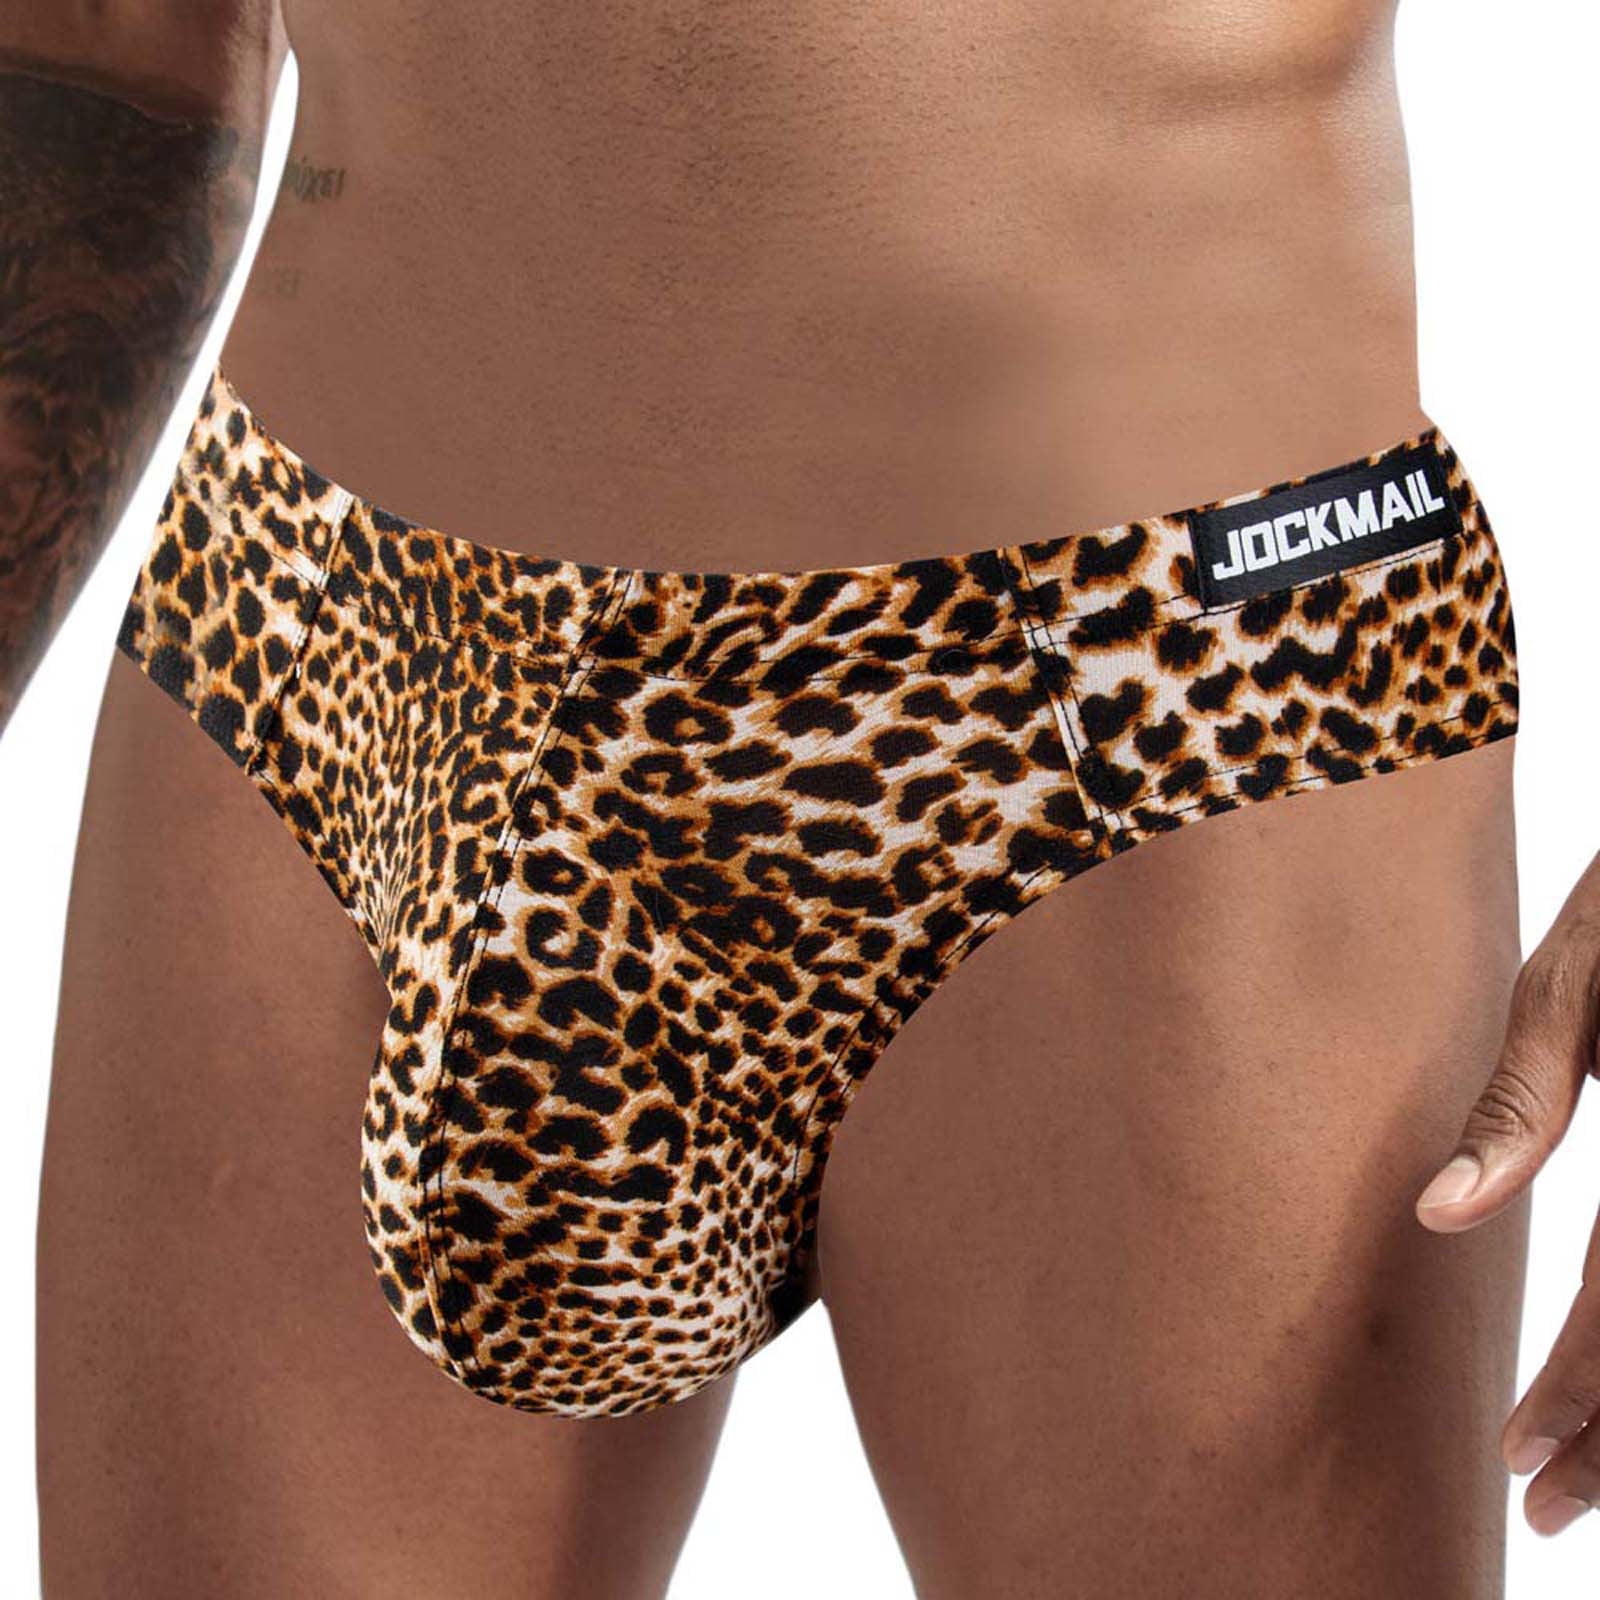 QENGING Mens Briefs Underwear Leopard Prints Silky Temptation